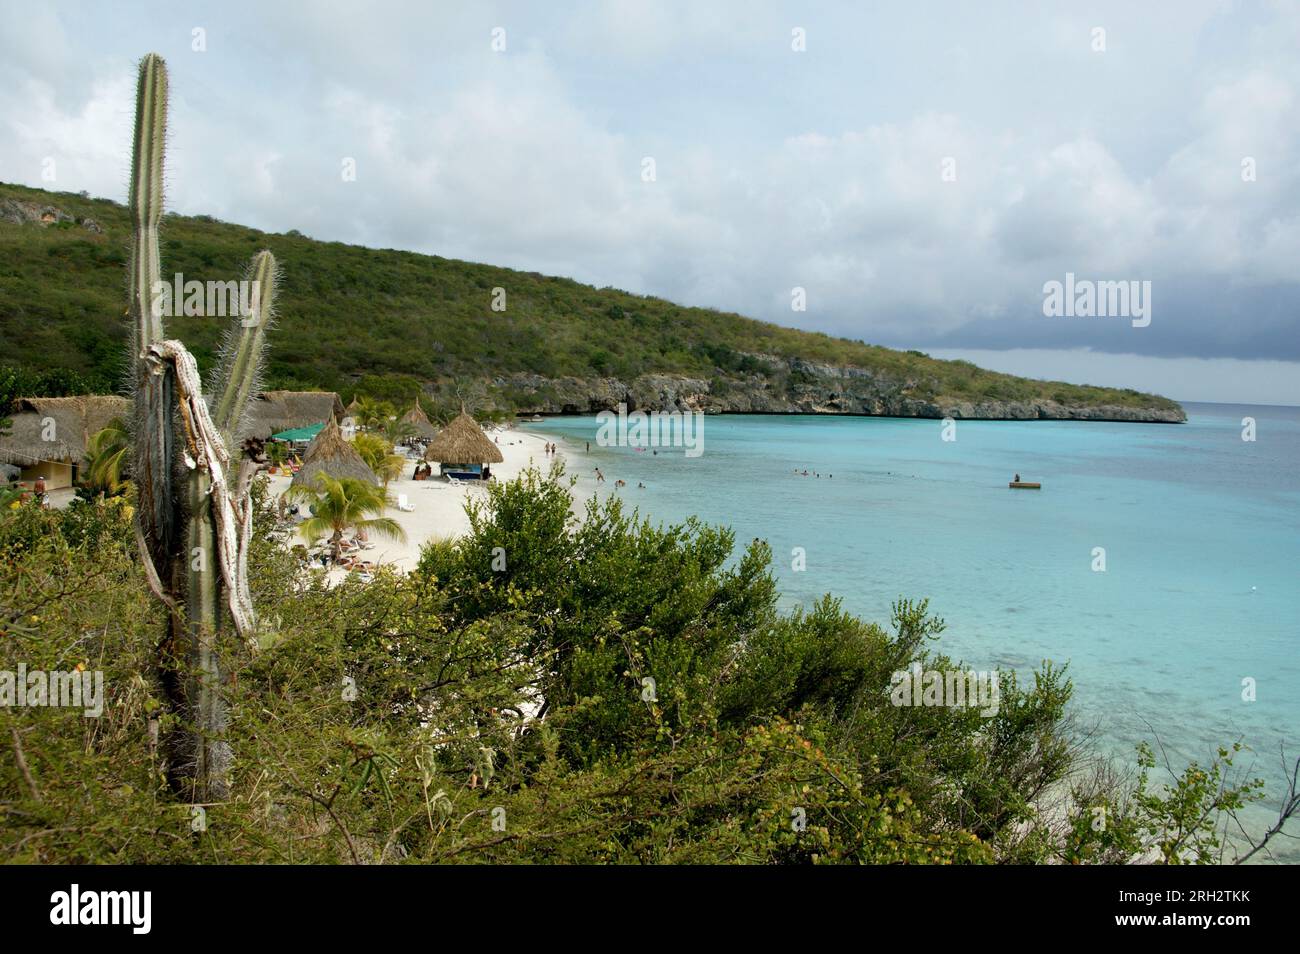 Vue sur la plage de cas Abao, située entre Willemstad et Westpunt sur l'île de Curaçao : plage de sable, cactee, baigneurs et radeau dans la mer bleue Banque D'Images